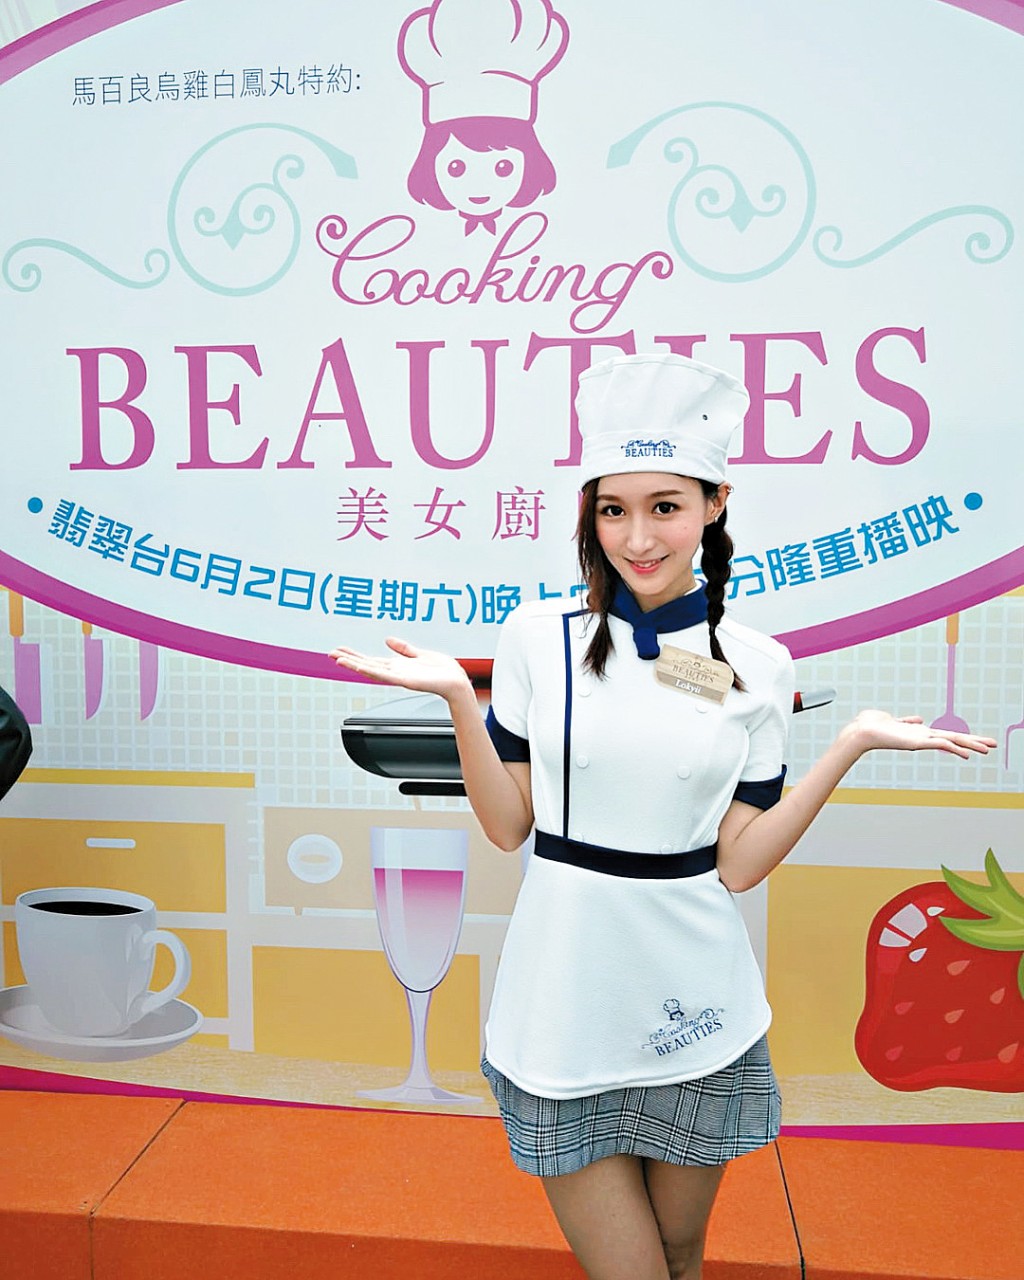 近年樂宜開始演出電視節目，而令香港人熟悉。2018年曾擔任無綫節目《美女廚房》學徒。